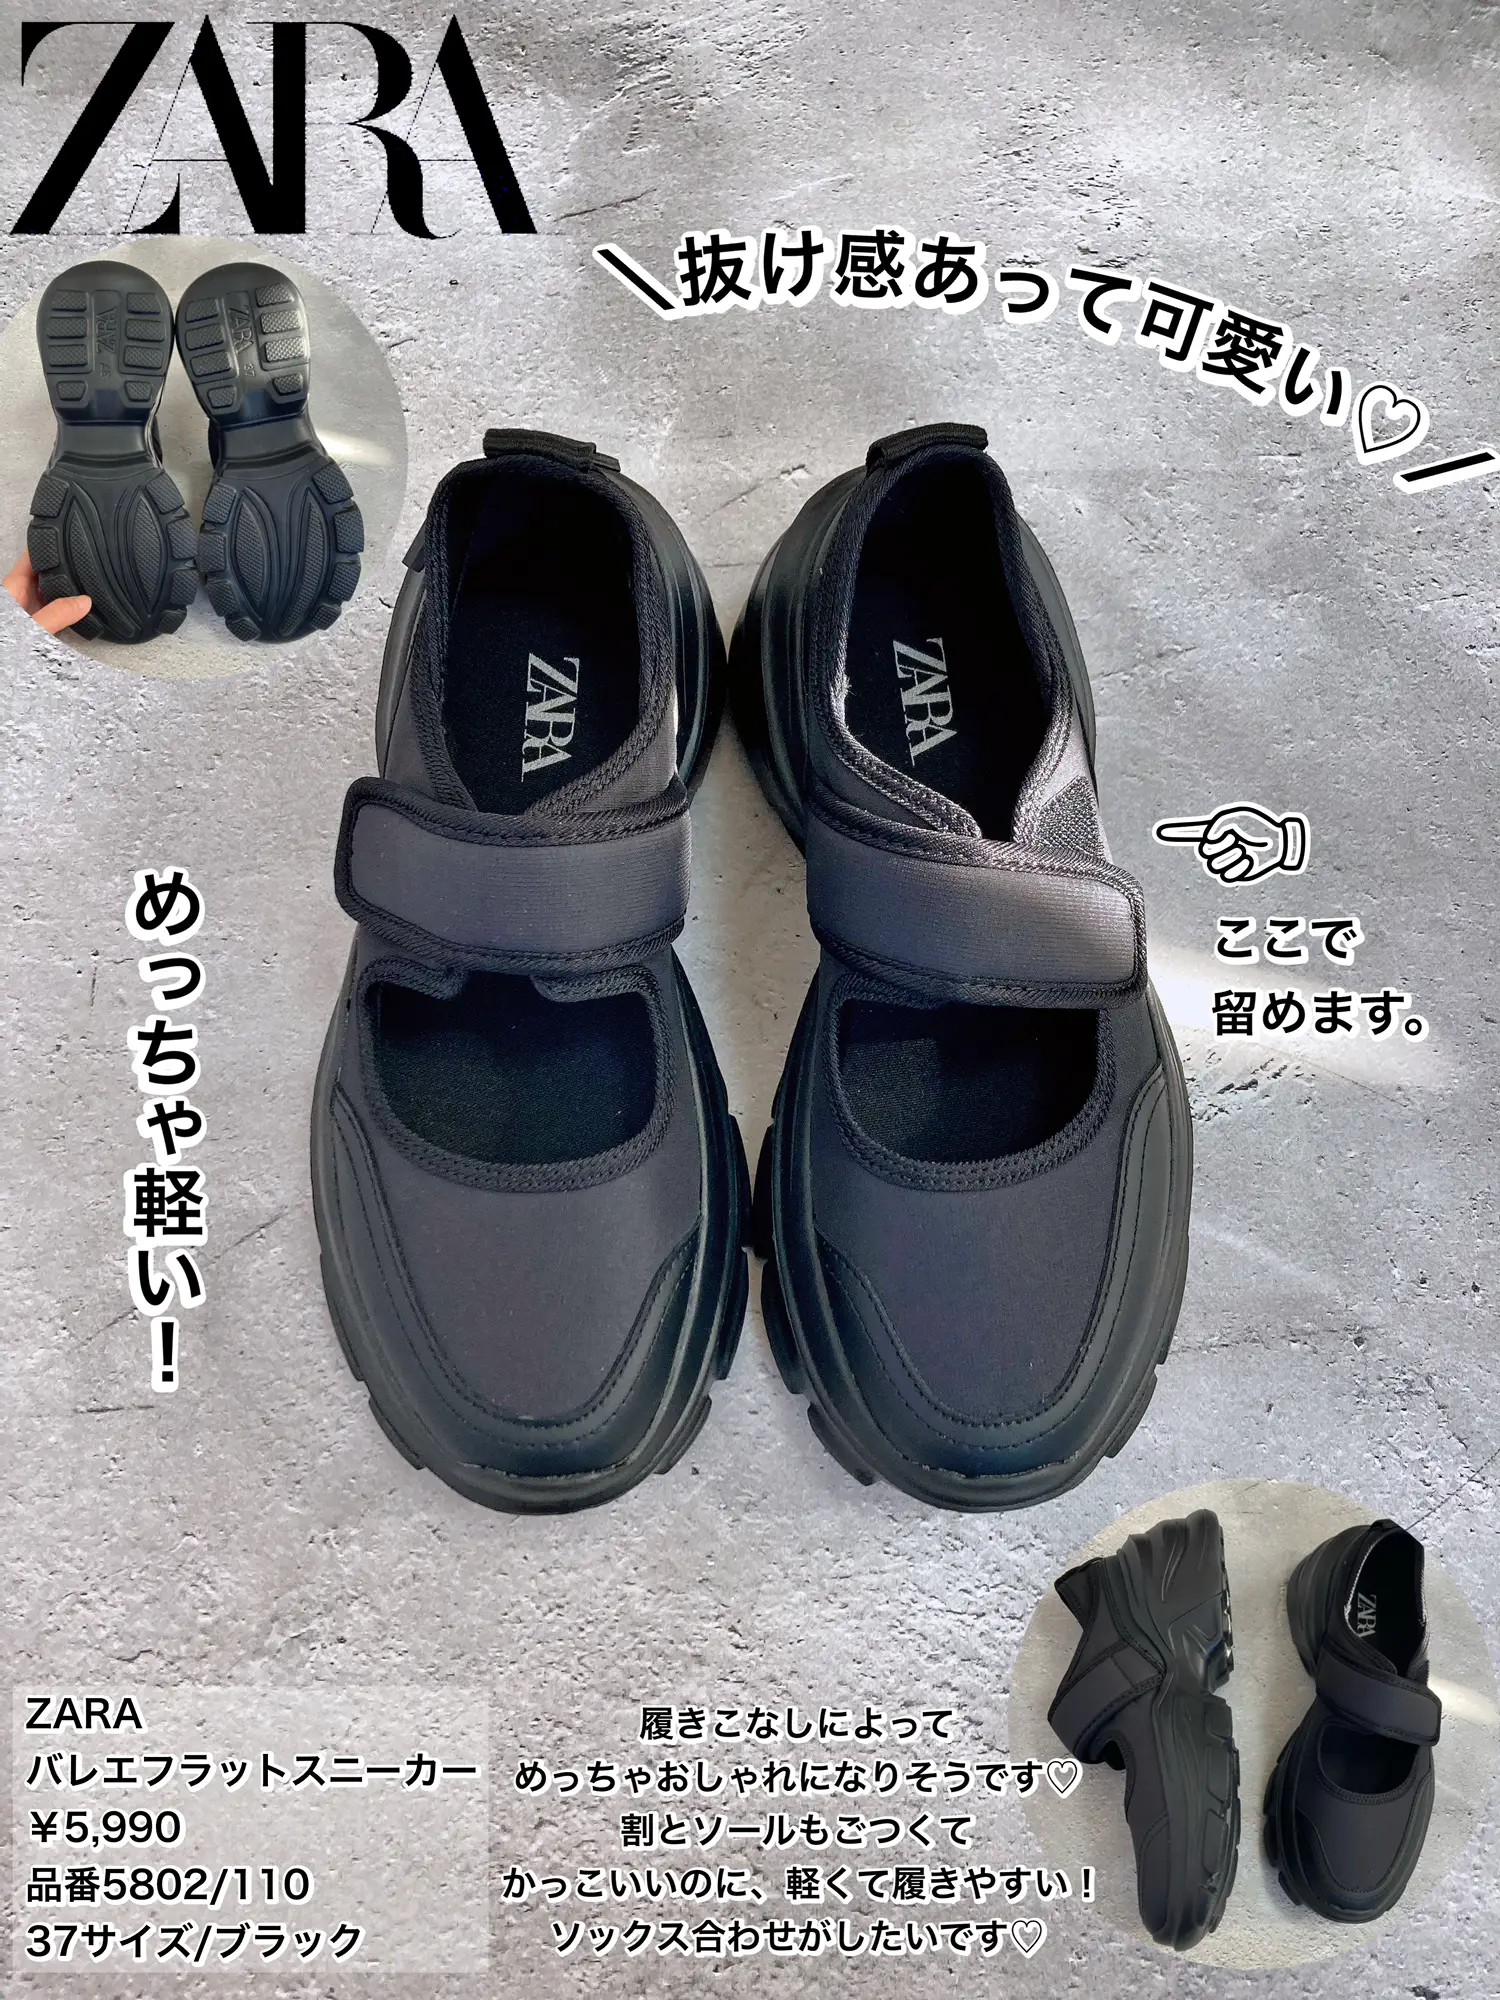 ZARA バレエ フラット スニーカー 37(24cm) - 靴